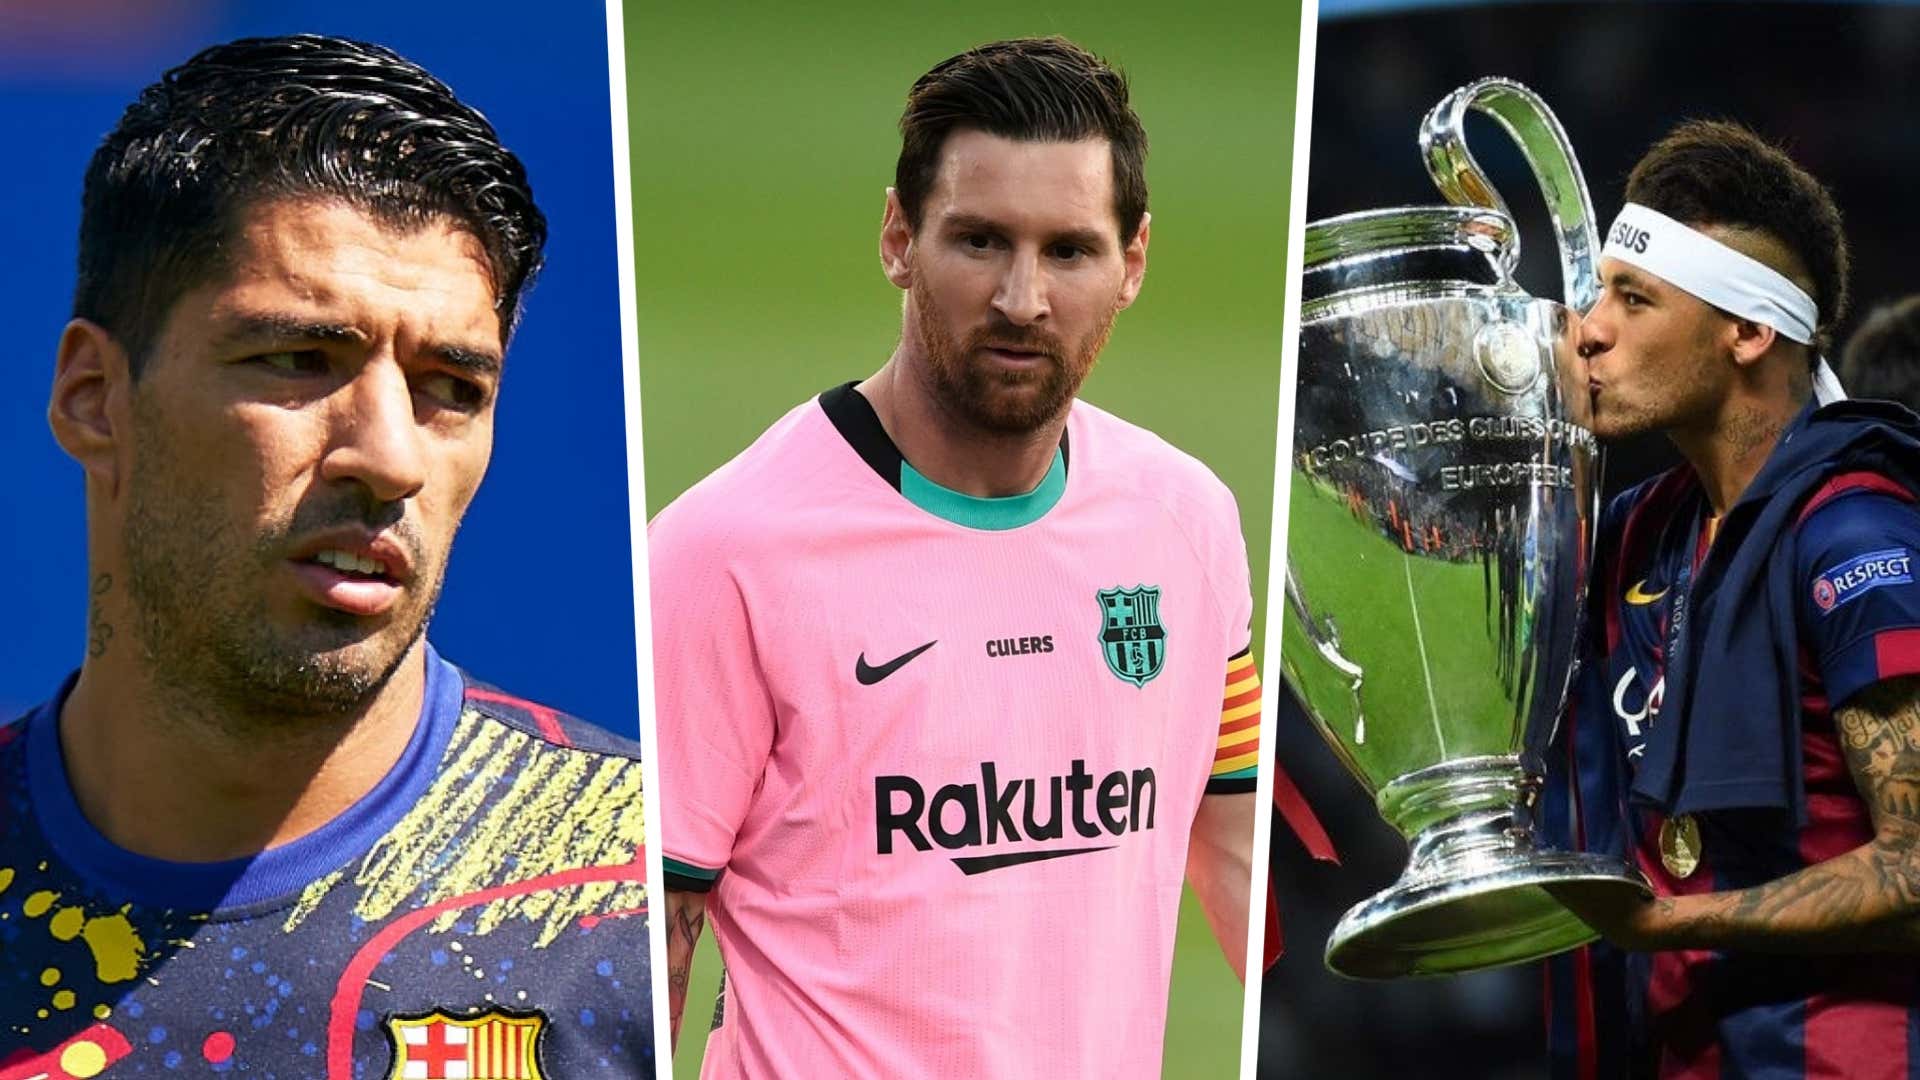 Tam tấu M-S-N: Chuẩn bị cho những khoảnh khắc đẹp nhất của Messi, Suarez và Neymar - ba ngôi sao lớn nhất của bóng đá thế giới hiện nay - khi họ trình diễn cho đội bóng của bạn. Hãy xem họ cùng nhau tiến tới mục tiêu kết thúc trận đấu với một chiến thắng lớn.